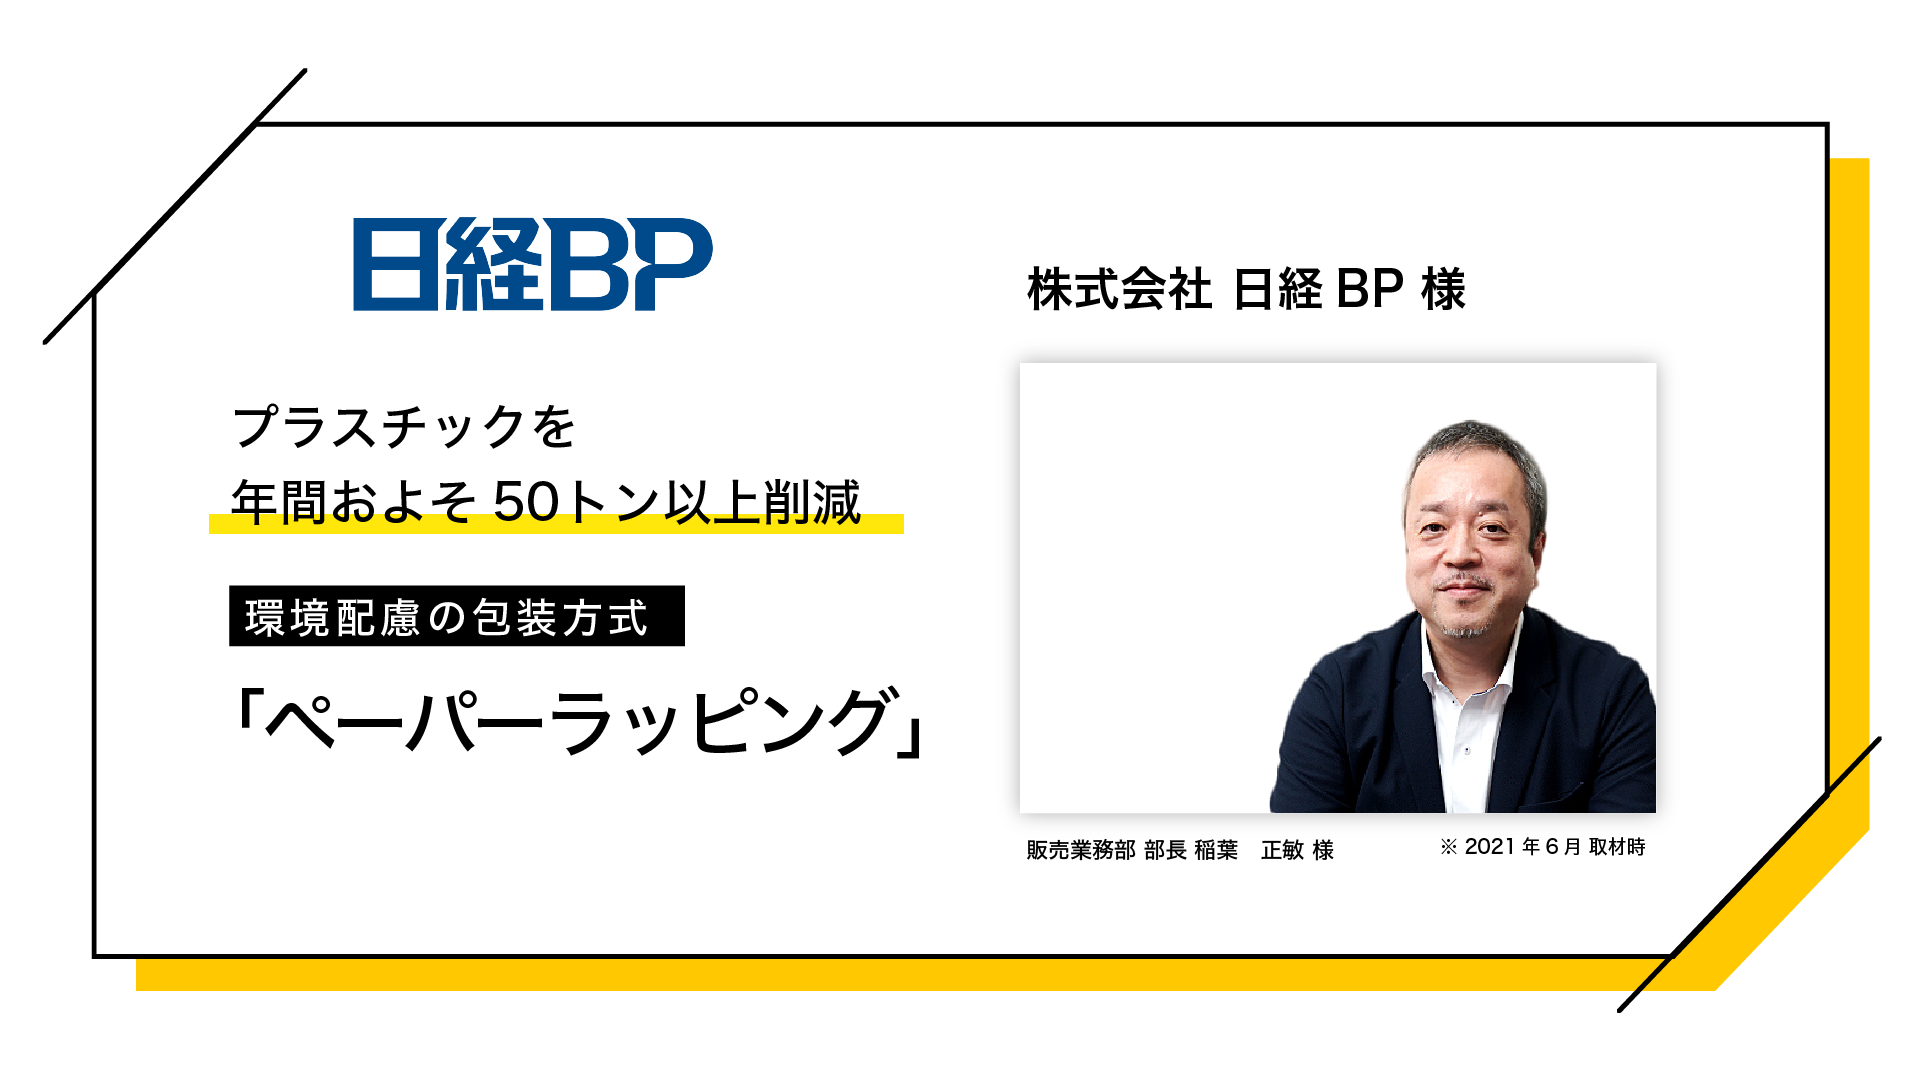 株式会社日経BP様